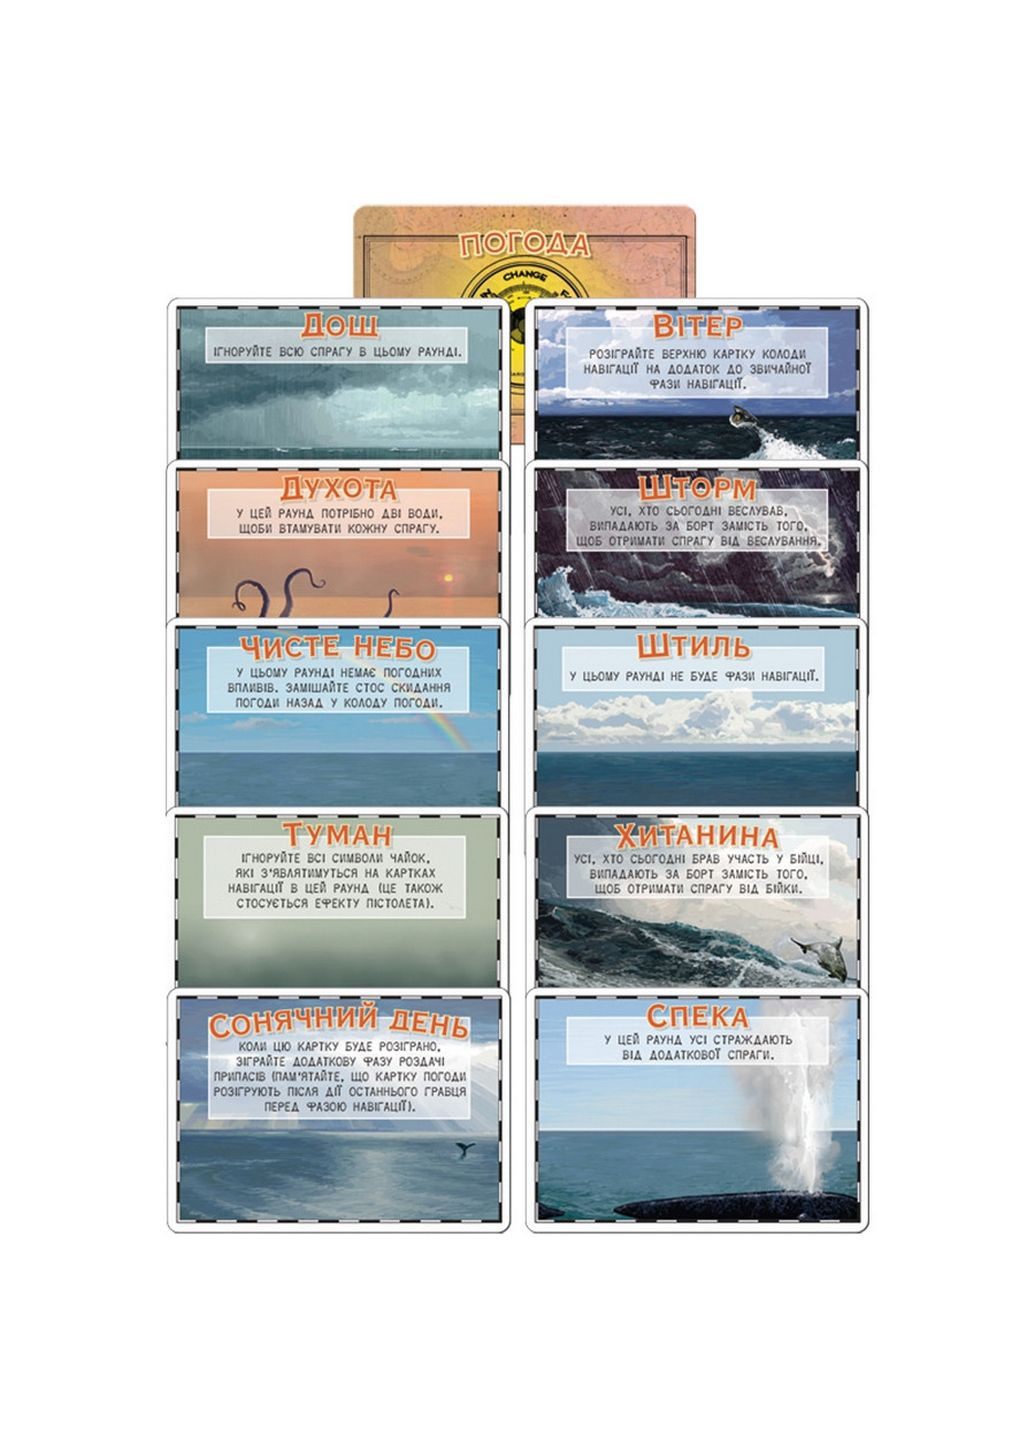 Настольная игра "Lifeboat: За бортом" от 4 до 8 игроков Games7Days (288188935)